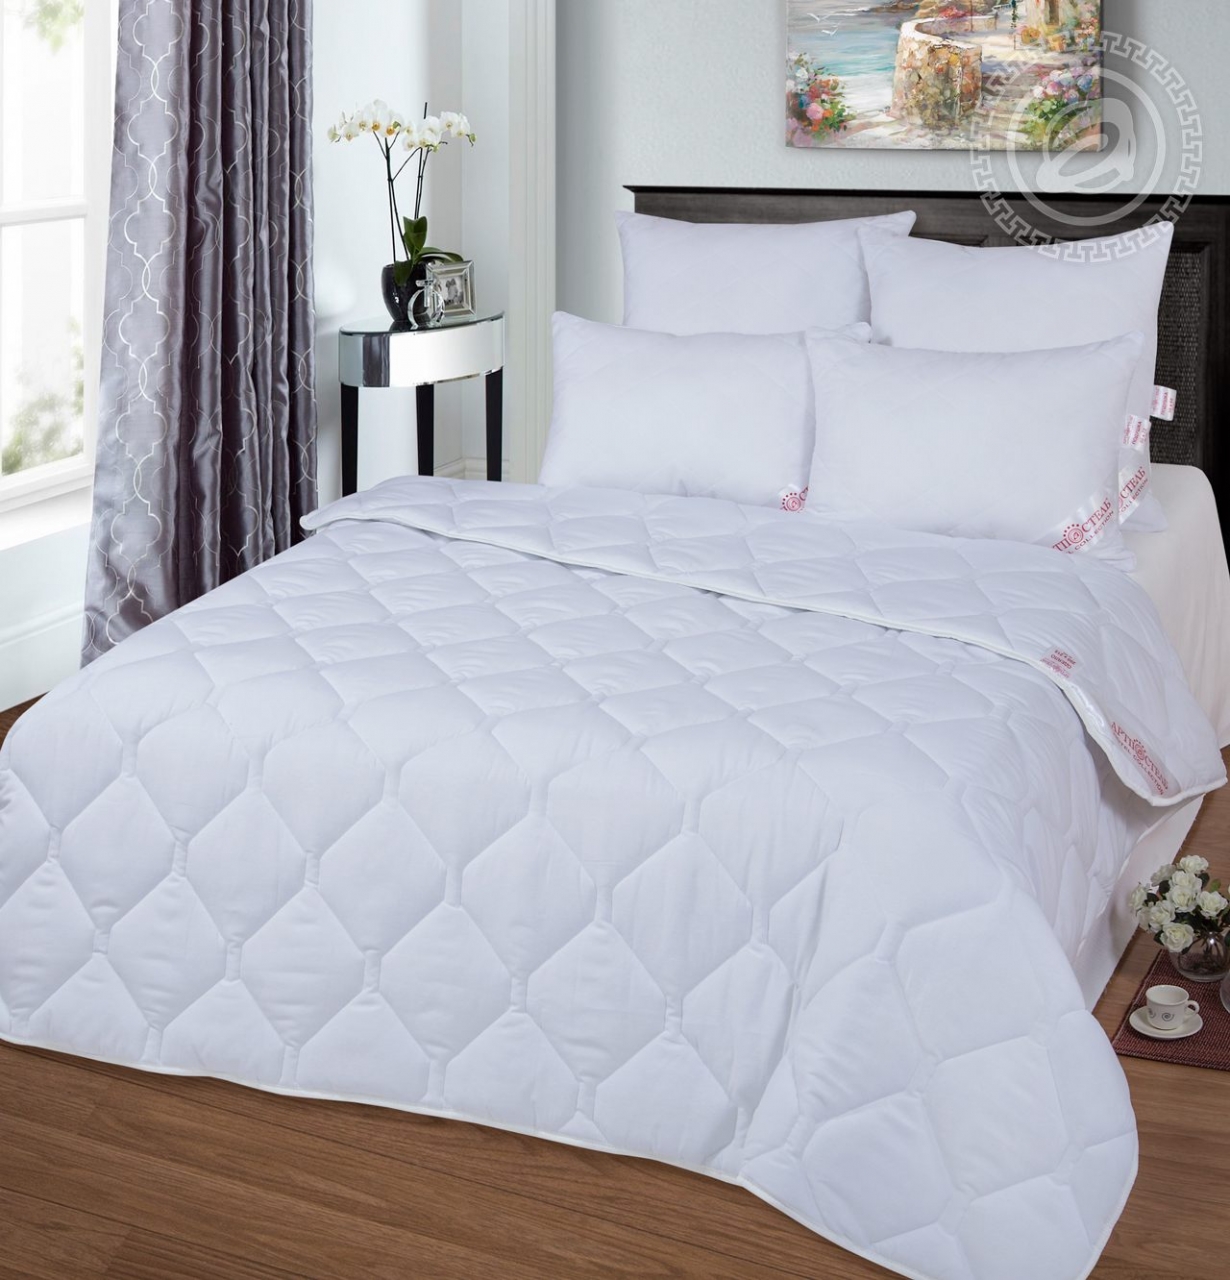 Одеяло Norman (140х205 см), размер 140х205 см, цвет белый atp465931 Одеяло Norman (140х205 см) - фото 1